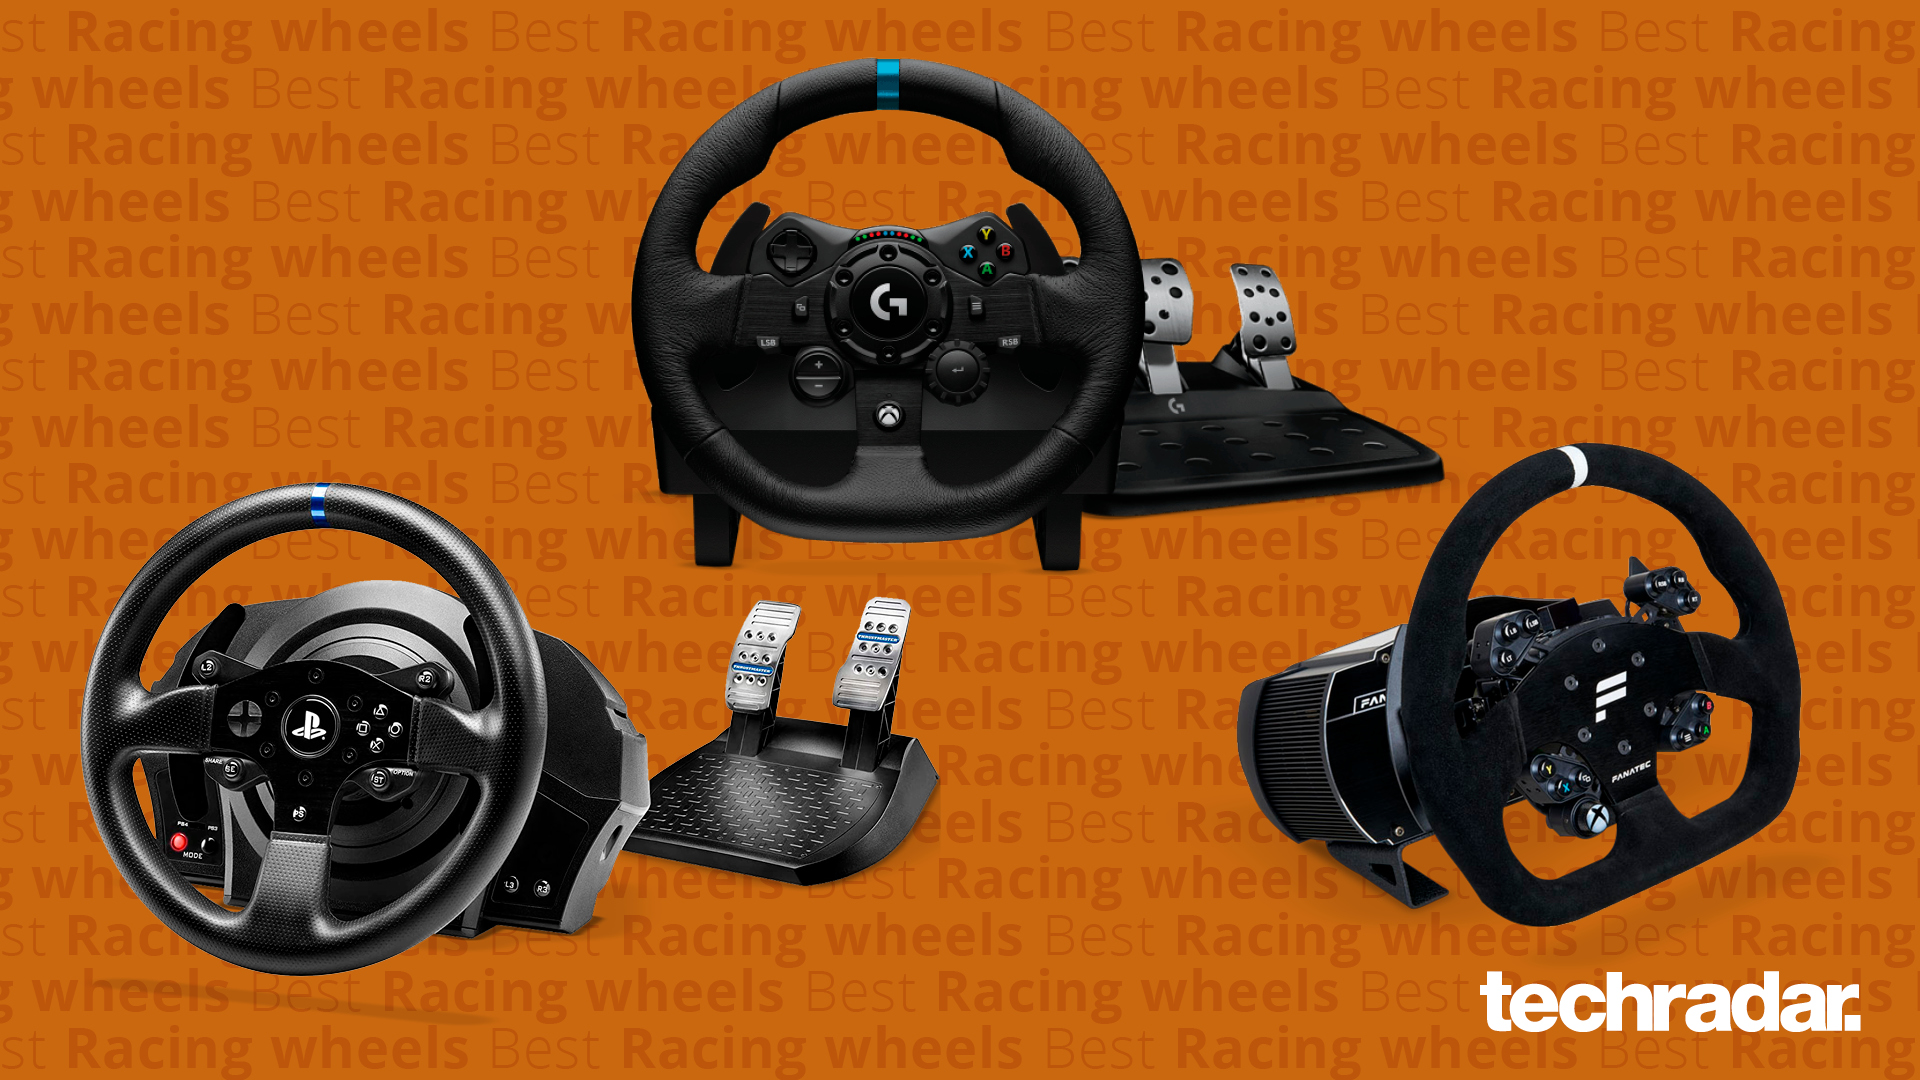 Intuition Frontier grammatik Best racing wheels | TechRadar